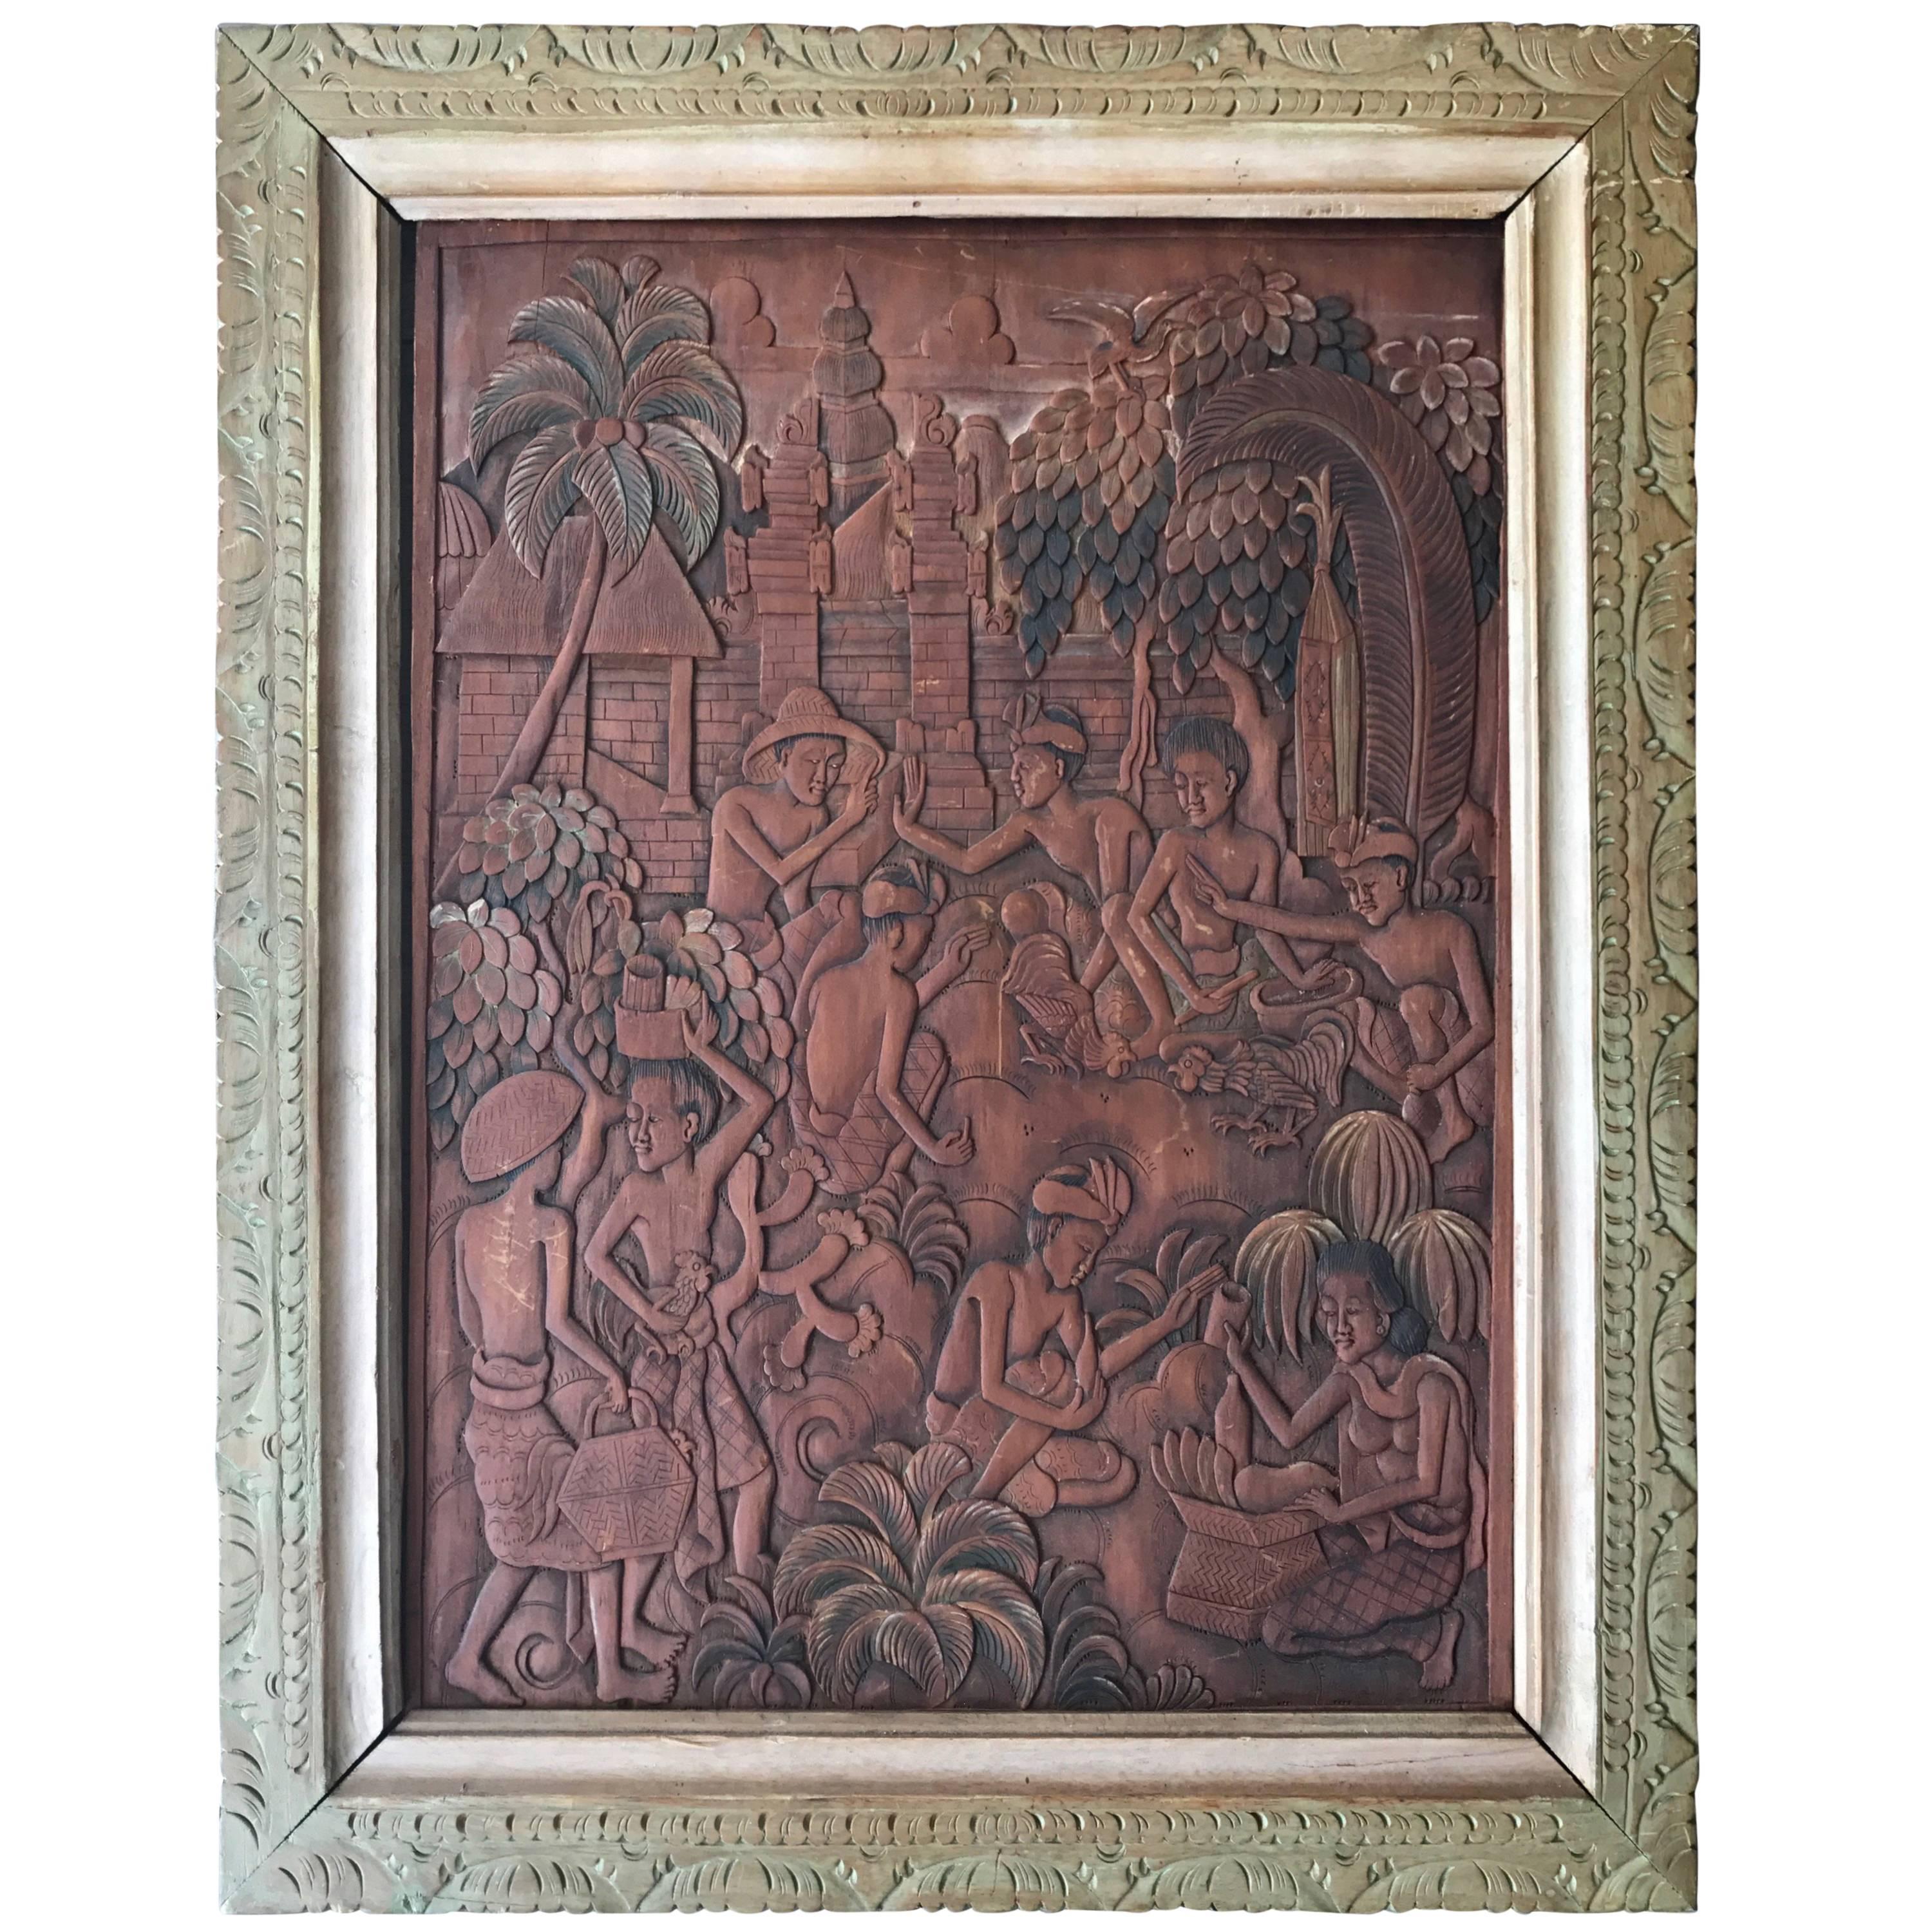 Balinesische, Batuanische, handgeschnitzte Rindsleder-Gemäldeskulptur von Ida Bagus Made Raka